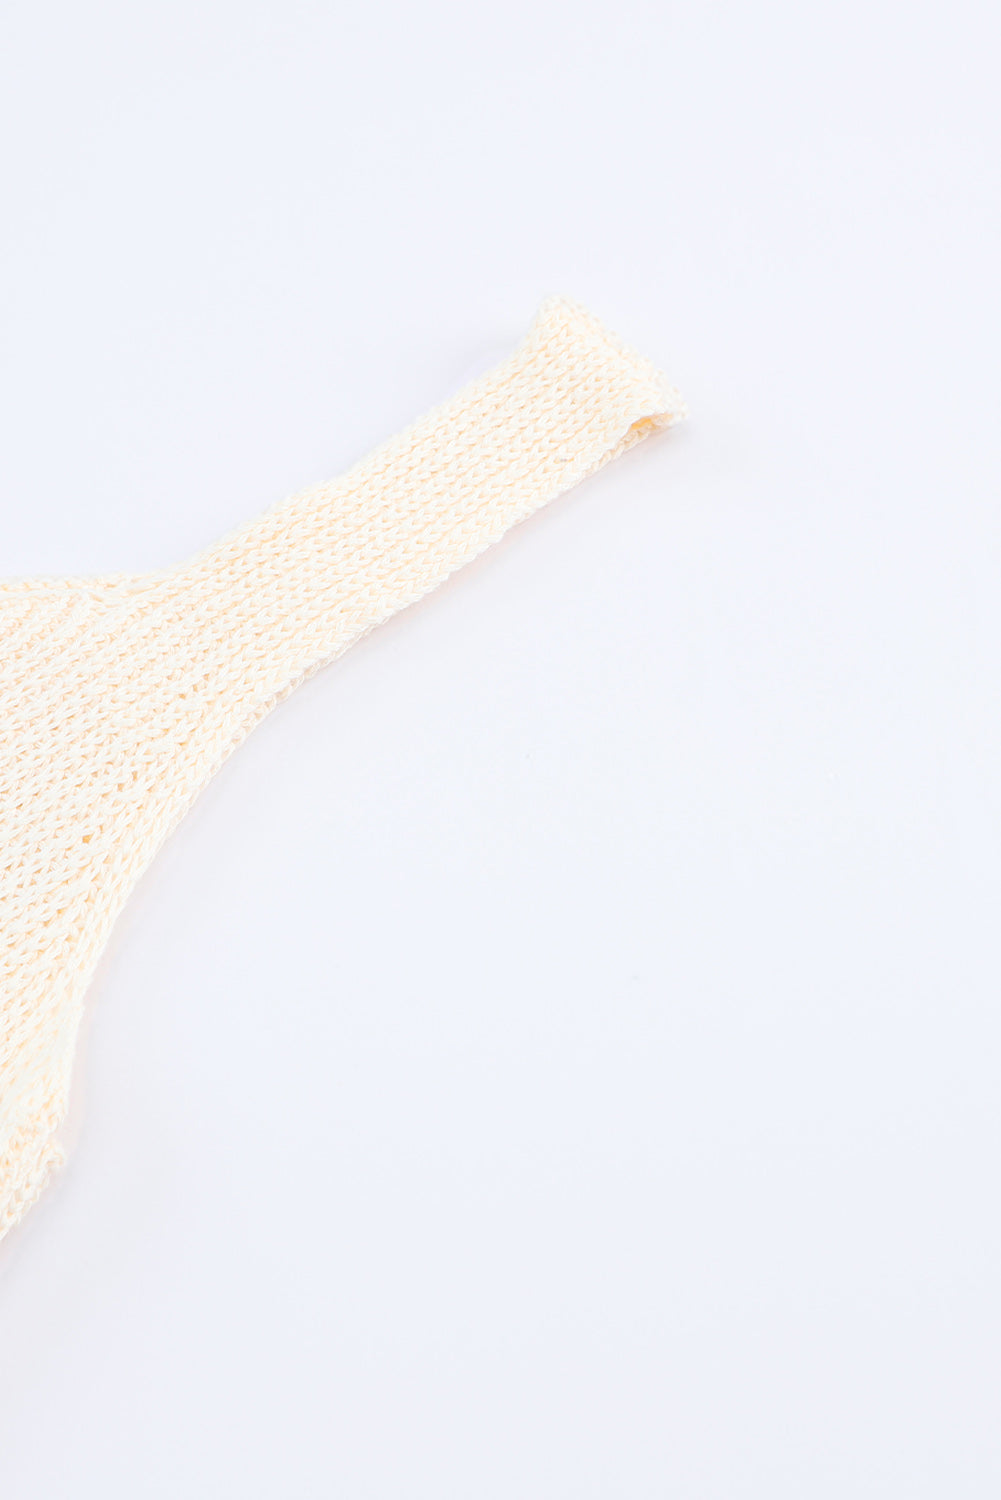 Gilet tricoté beige à ourlet volanté au crochet